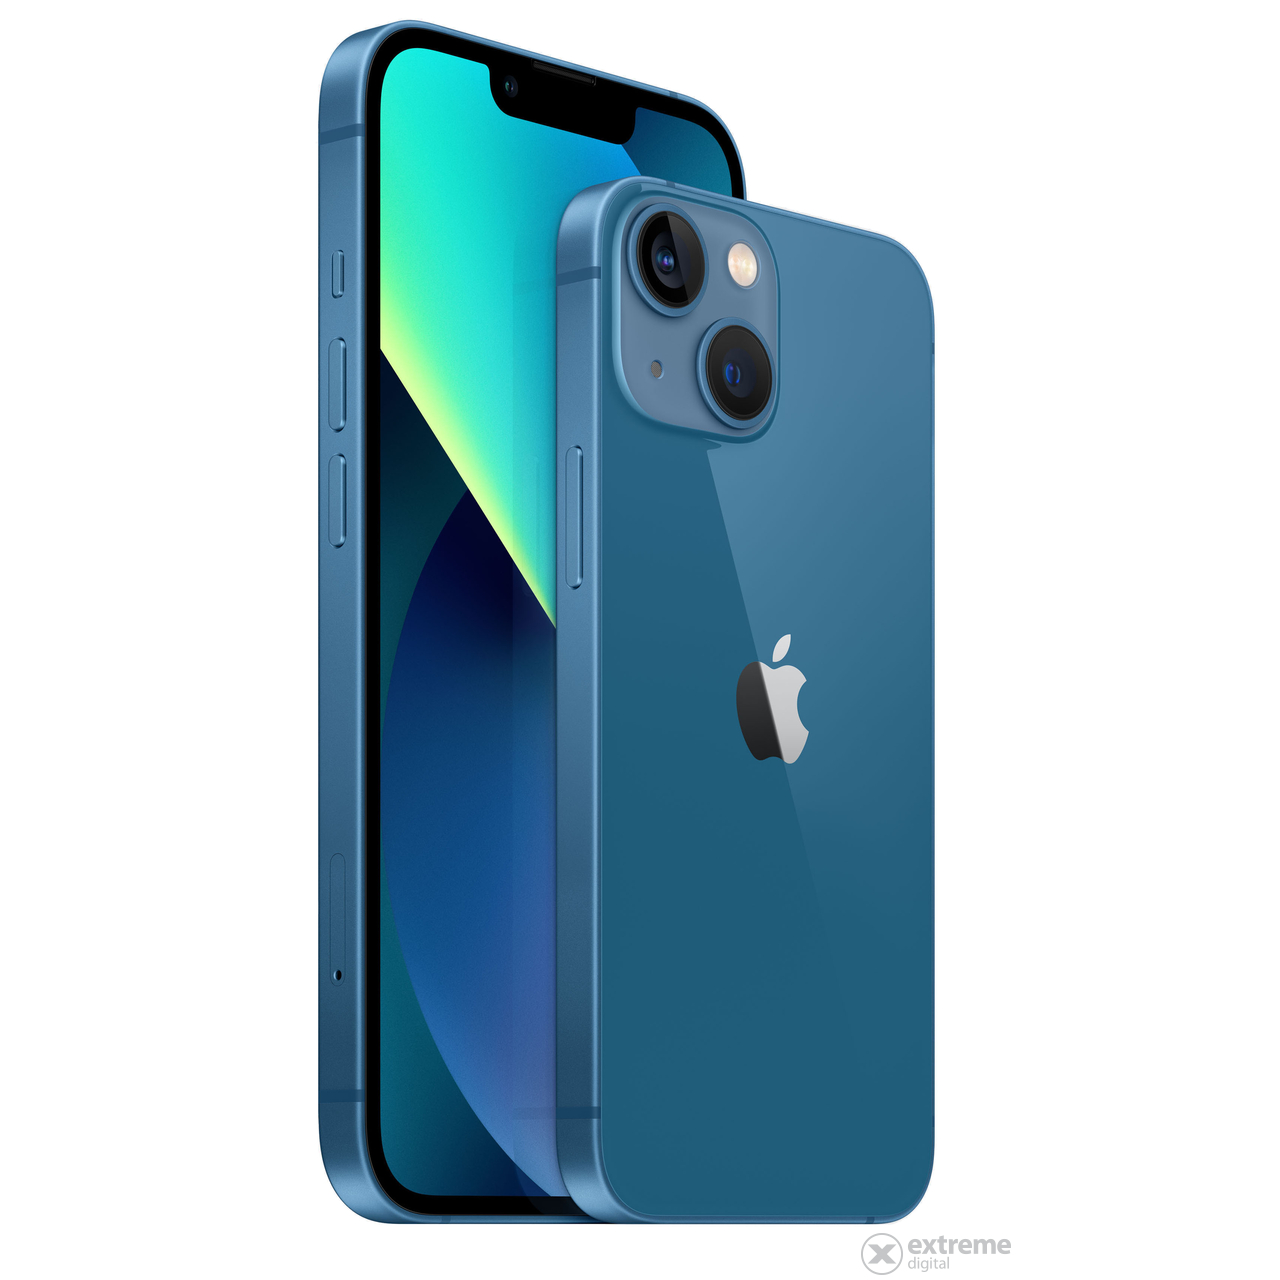 Apple iPhone 13 512GB (mlqg3hu/a), plava